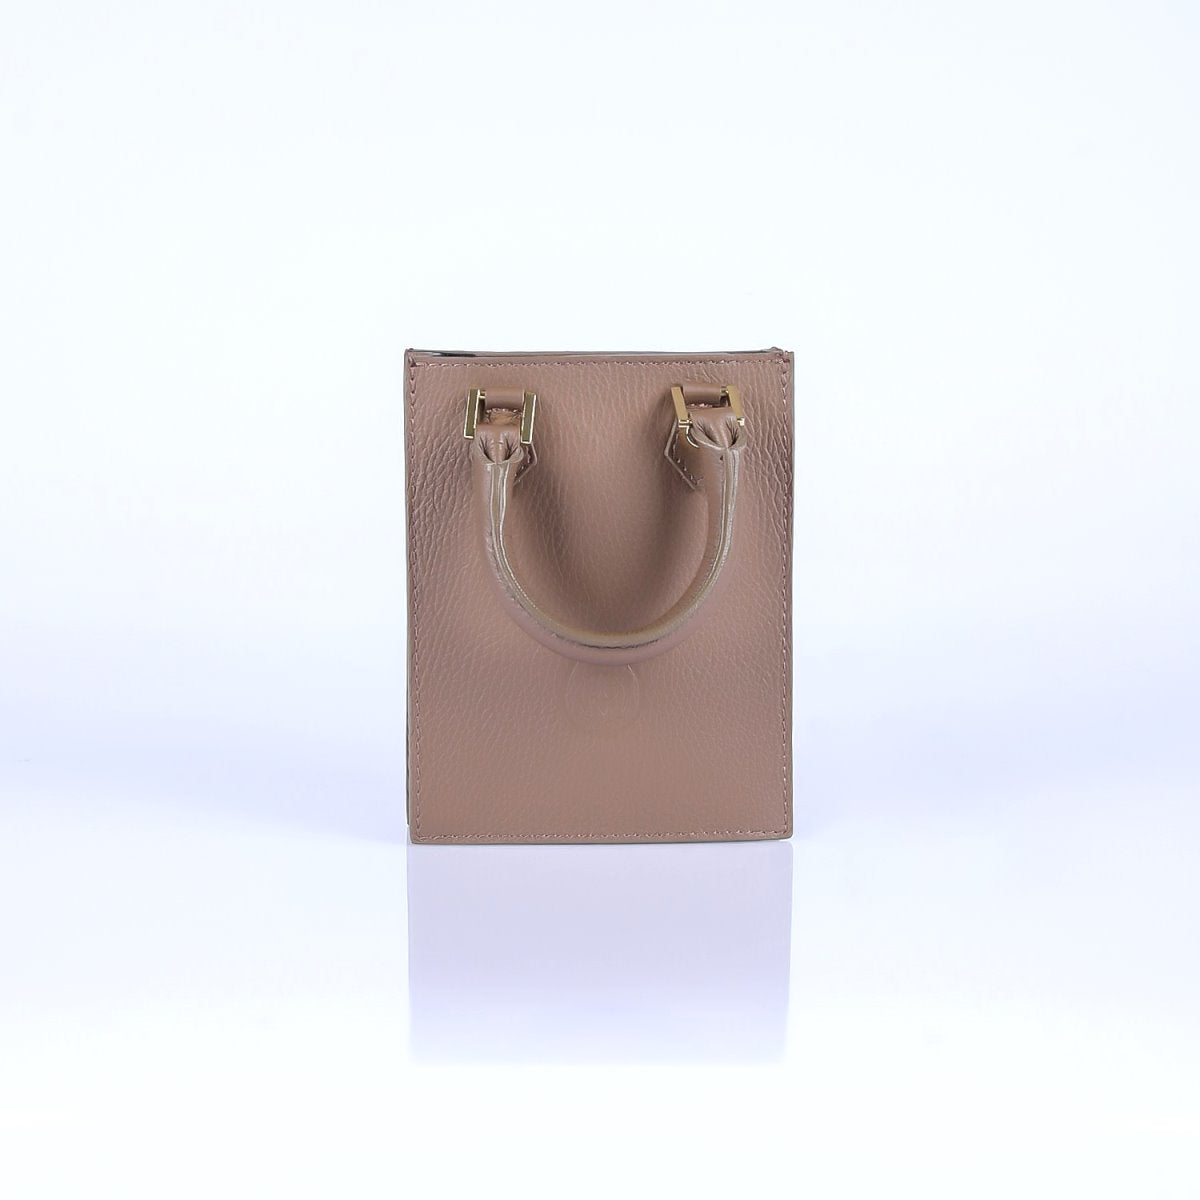 Tumbled genuine leather handbag art. 112343